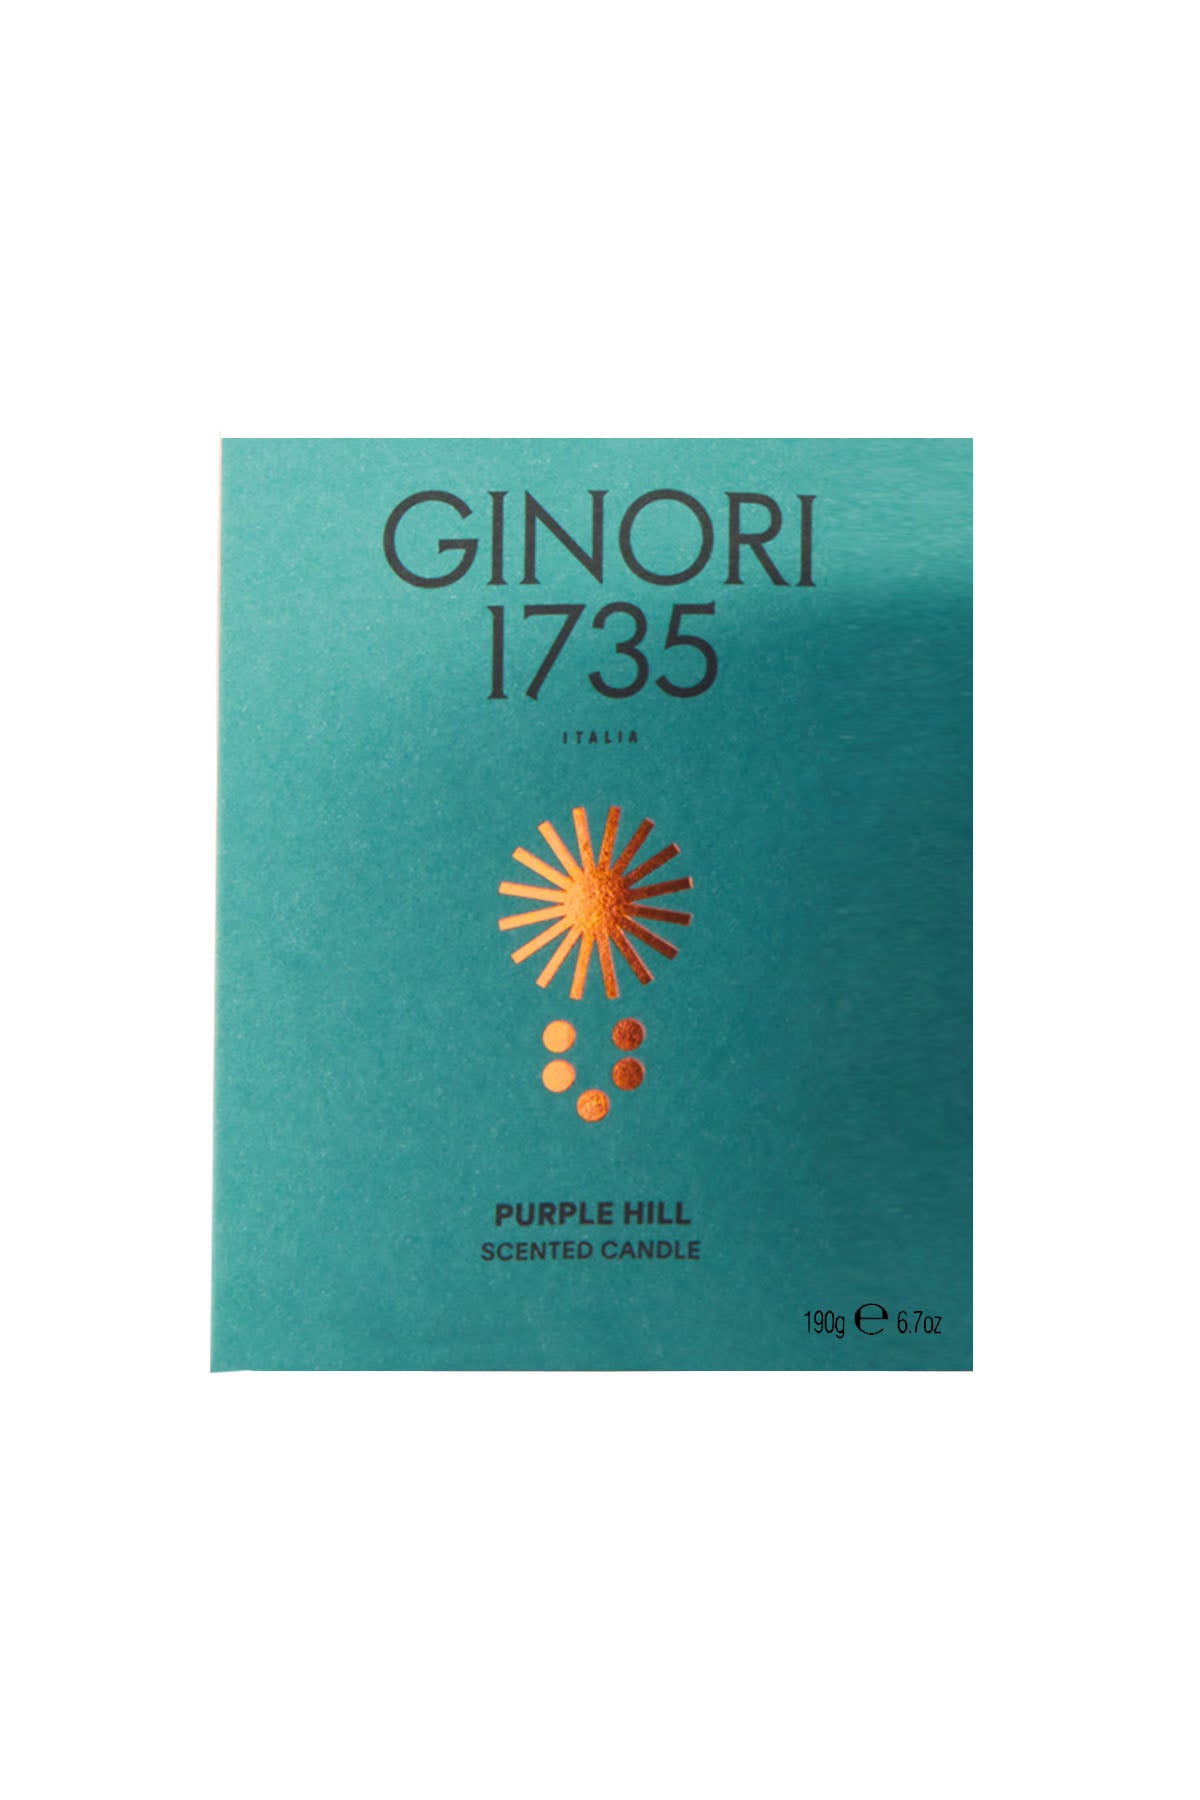 Ginori 1735 purple hill scented candle refill for il seguace 190 gr-0